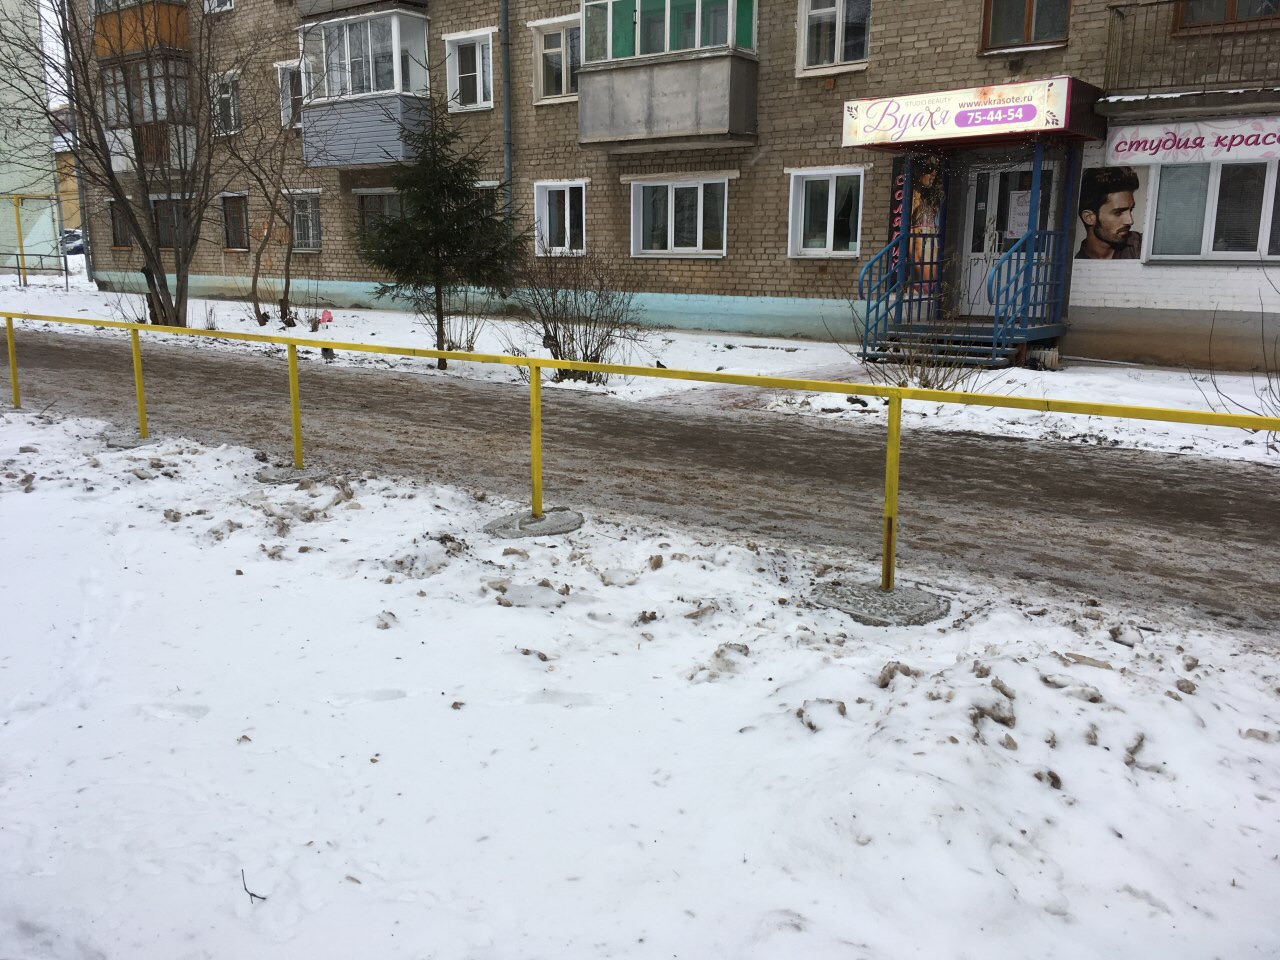 "Инвалидов никто не спросил, будут ли удобны им поручни": кировский урбанист о новых ограждениях